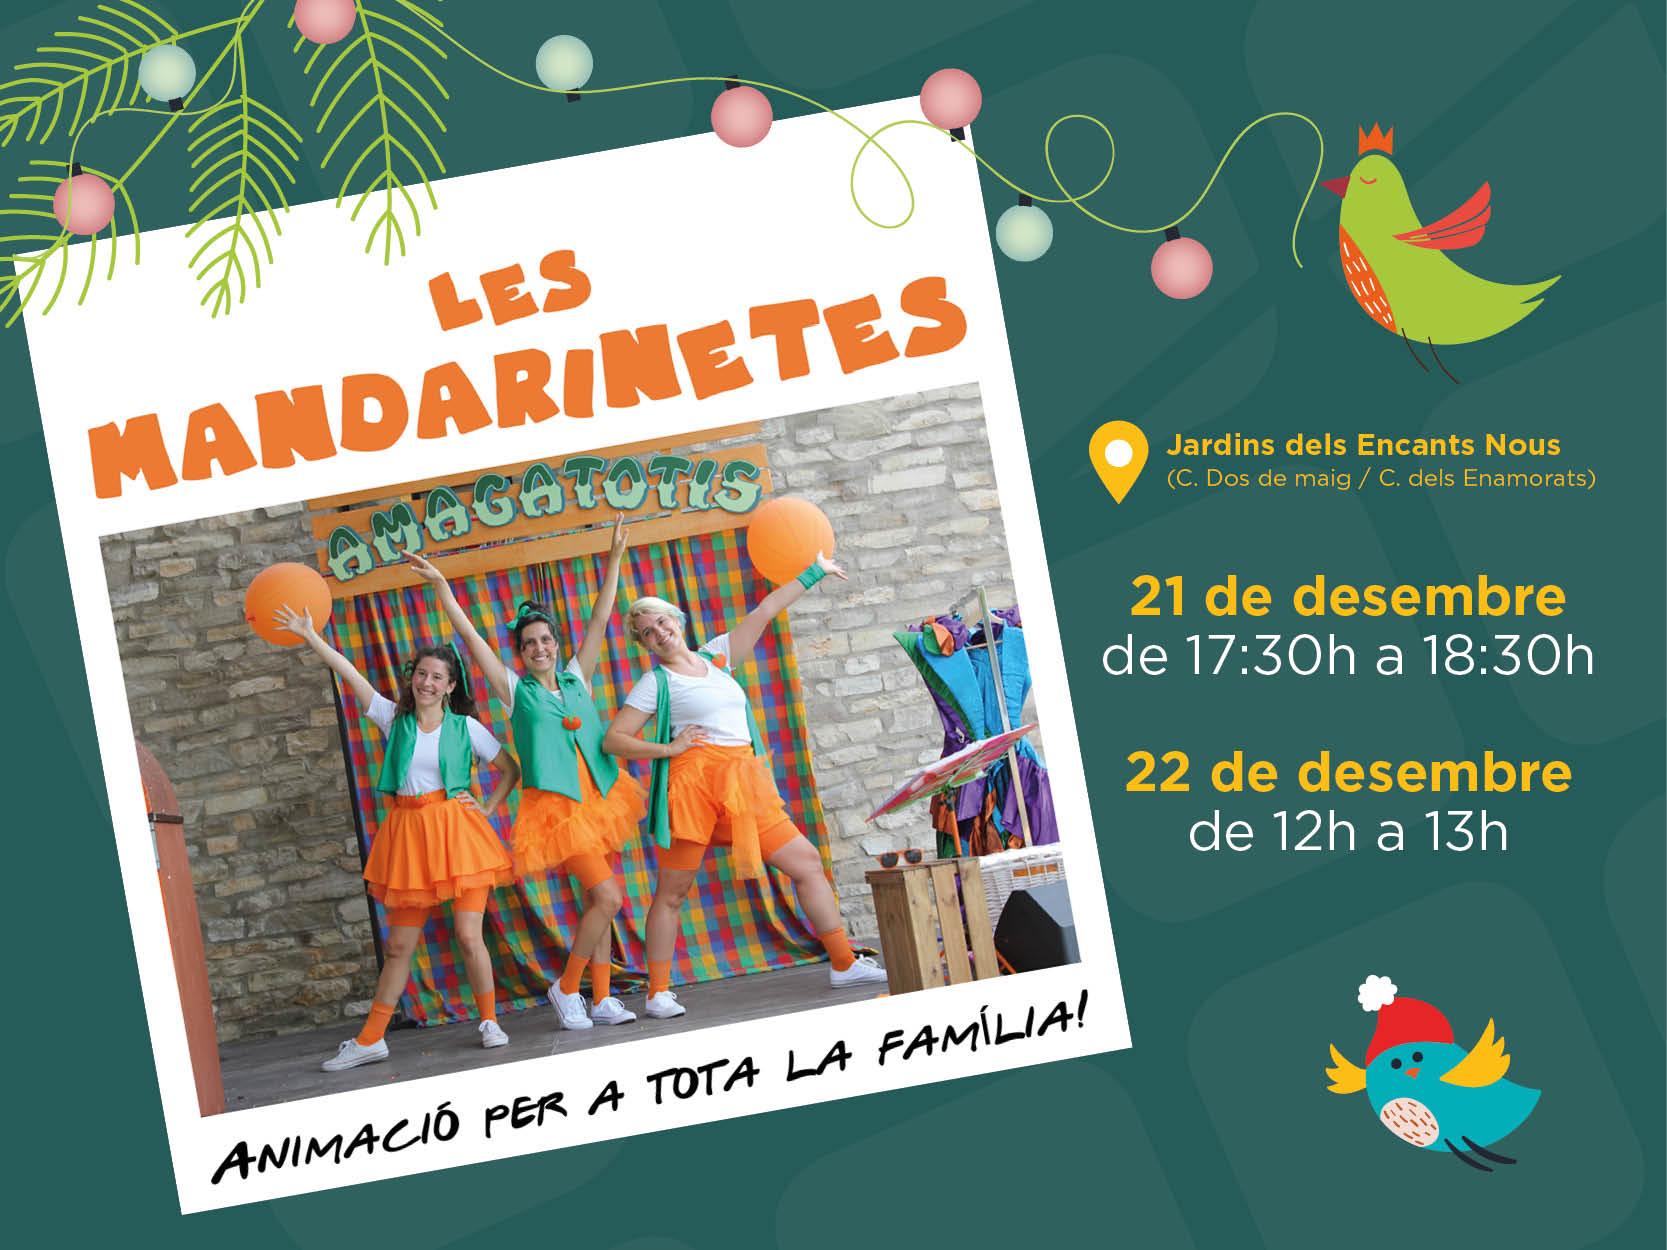 Las Mandarinetes, un concierto teatralizado lleno de humor y diversin para toda la familia!